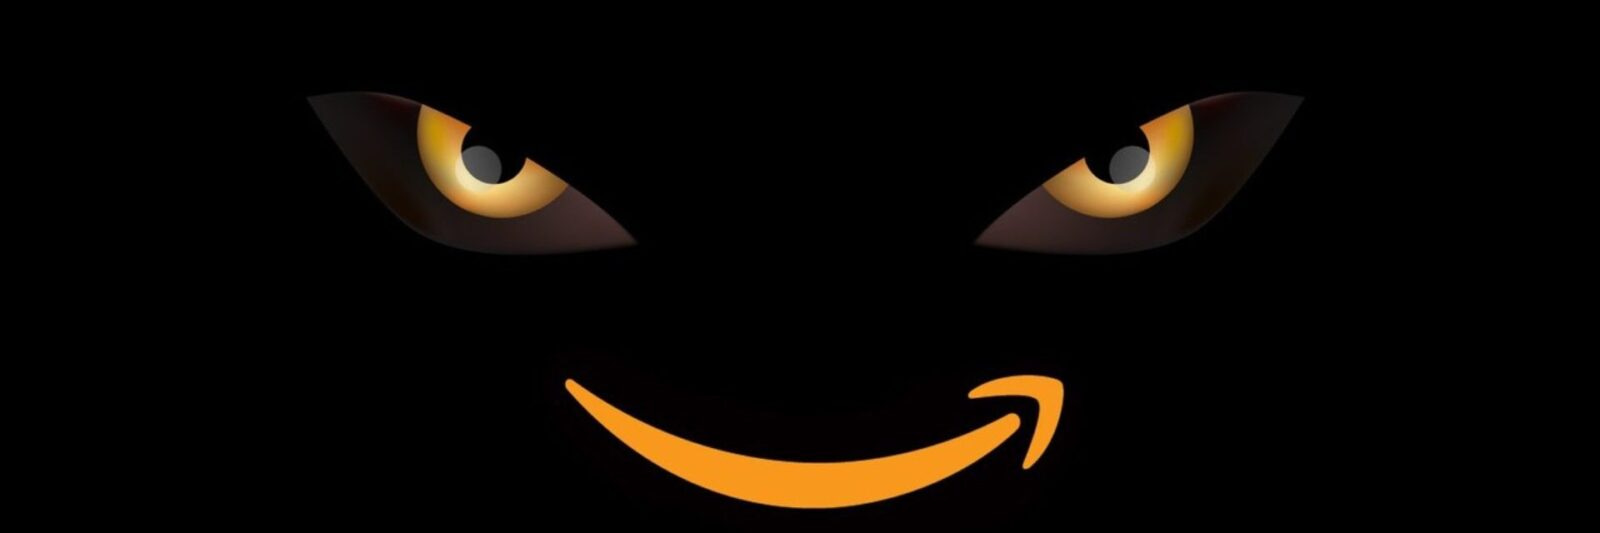 Amazon is inside!